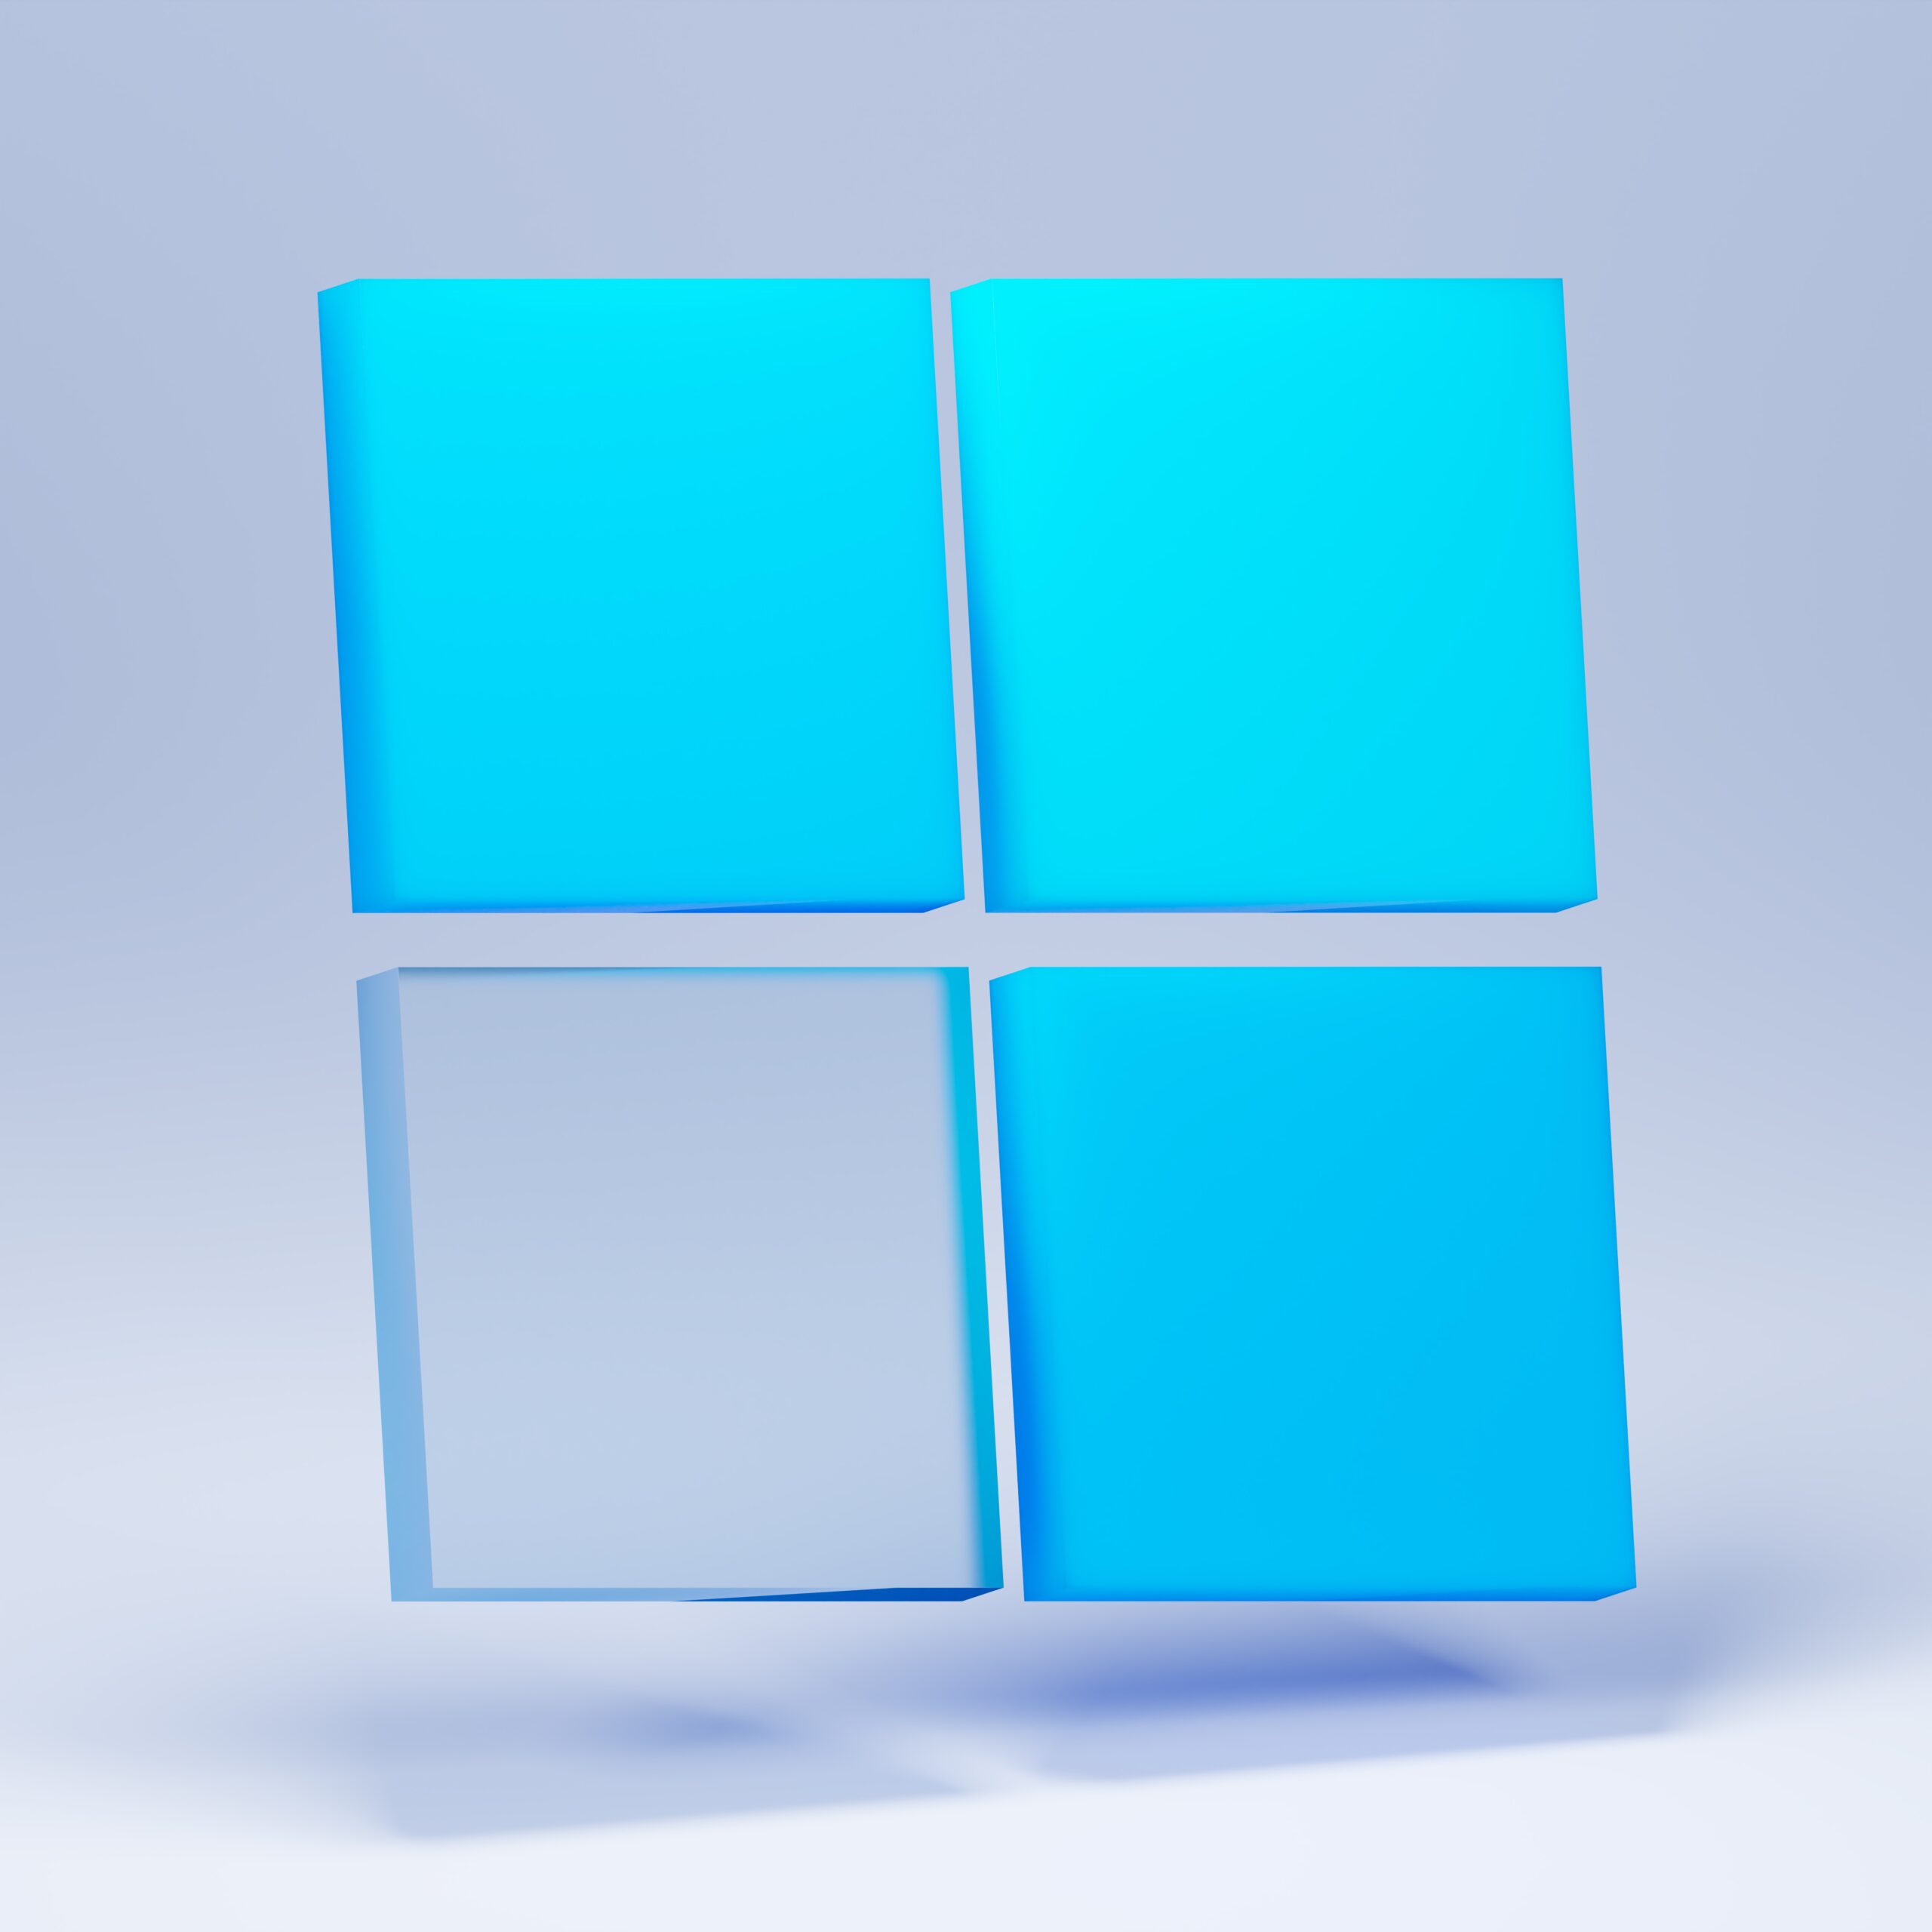 Cómo acelerar y mejorar el inicio de Windows 10: Desactivar servicios innecesarios y limpieza en el arranque